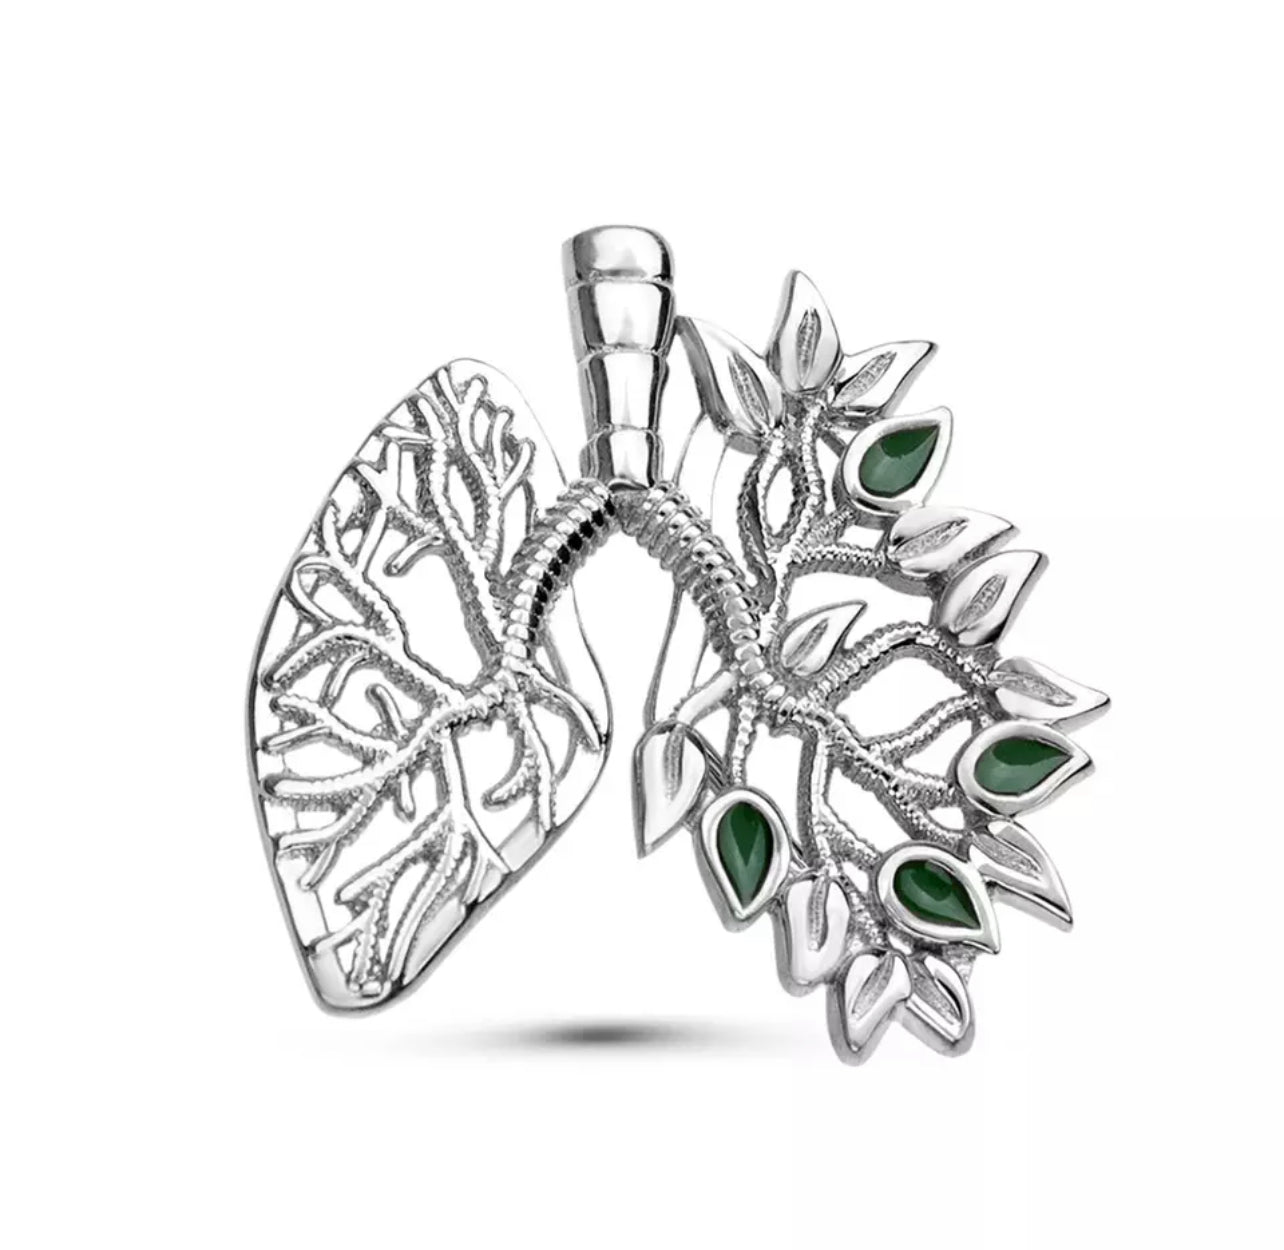 Elegant lung